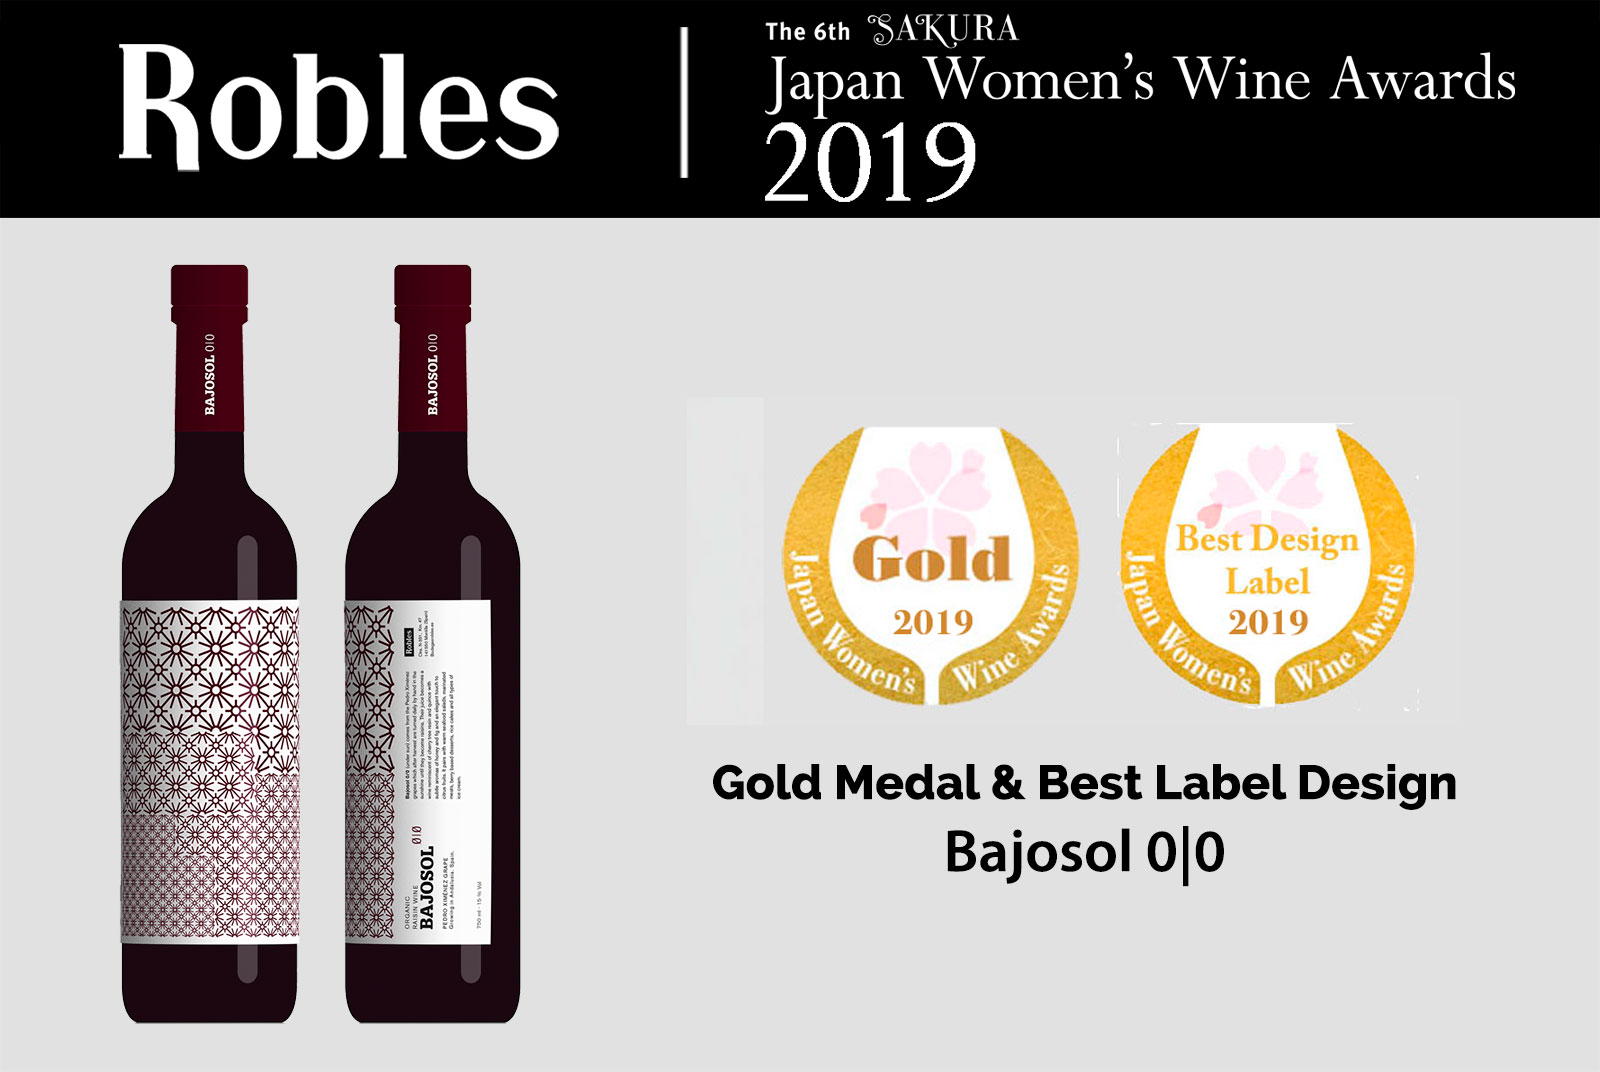 Medalla de Oro y Mejor Diseño para Bajosol 0|0 en Sakura 2019